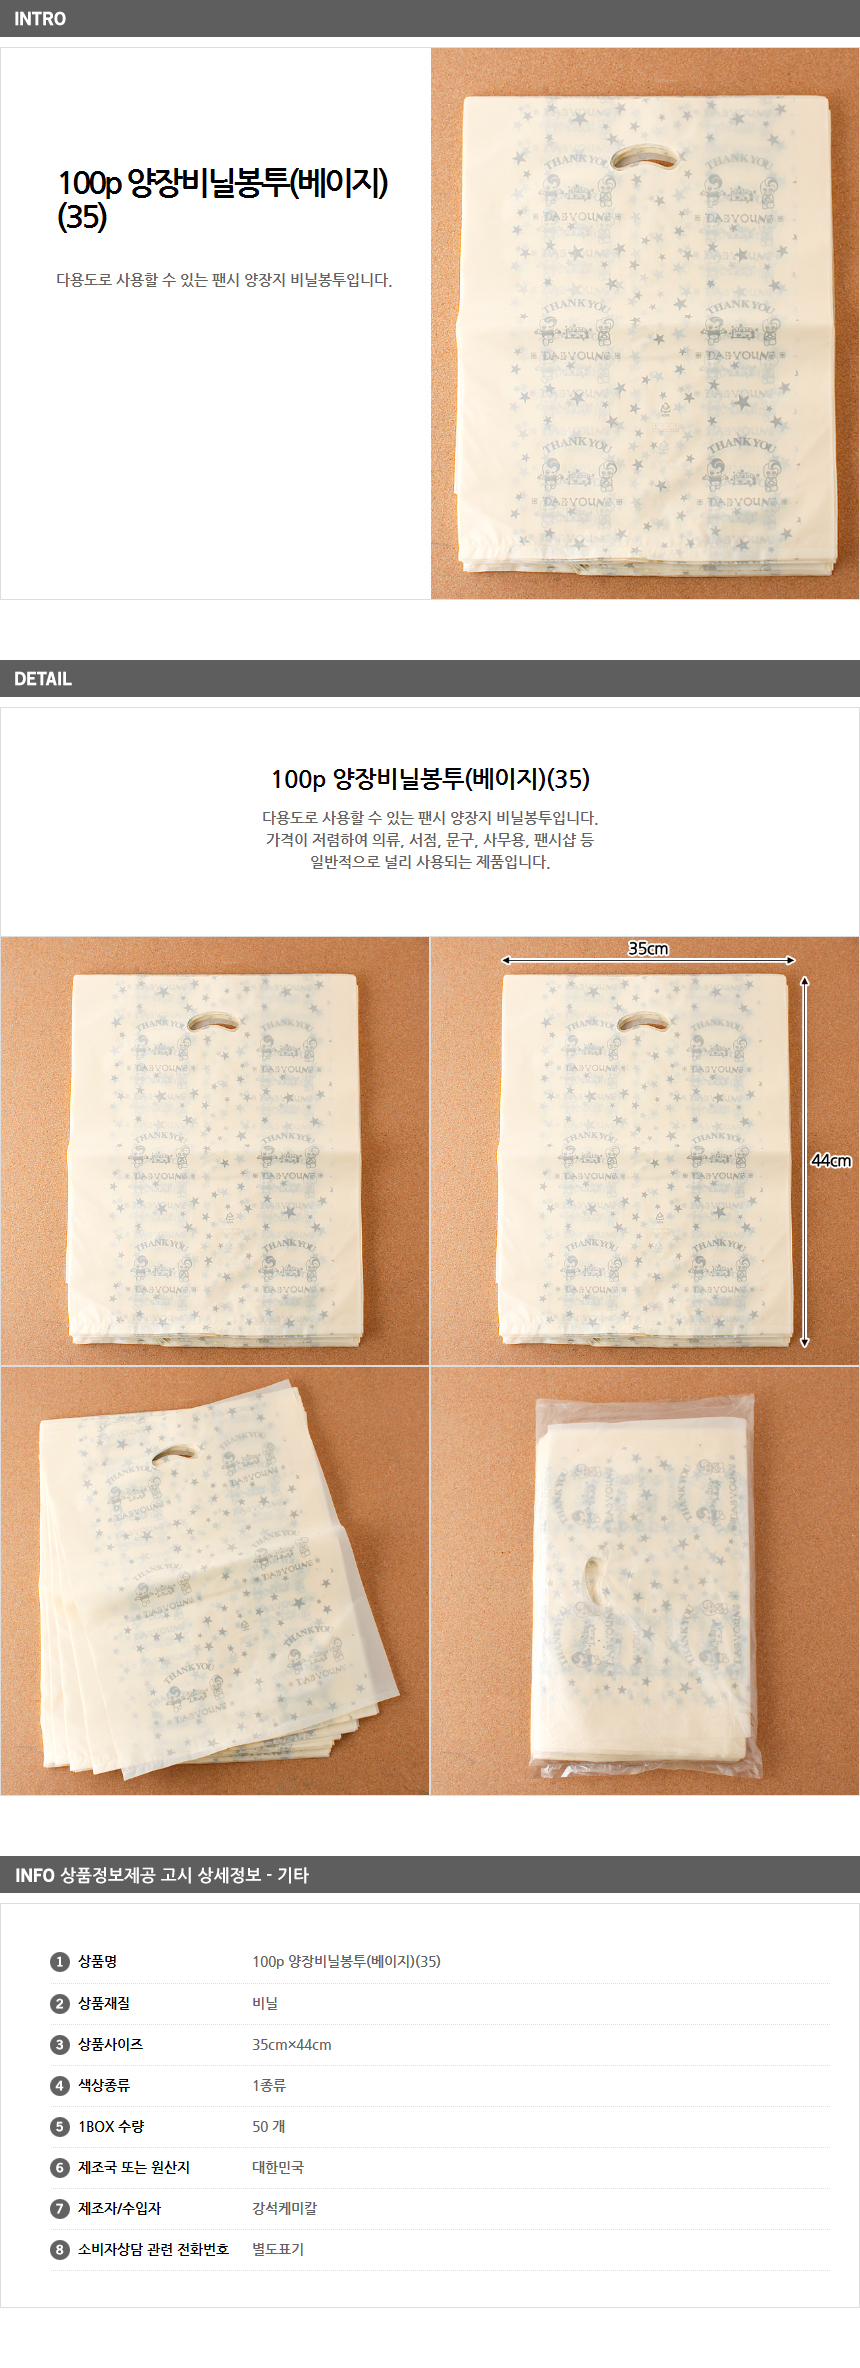 100p 팬시비닐봉투 35/ 선물 비닐쇼핑백 쇼핑비닐봉투